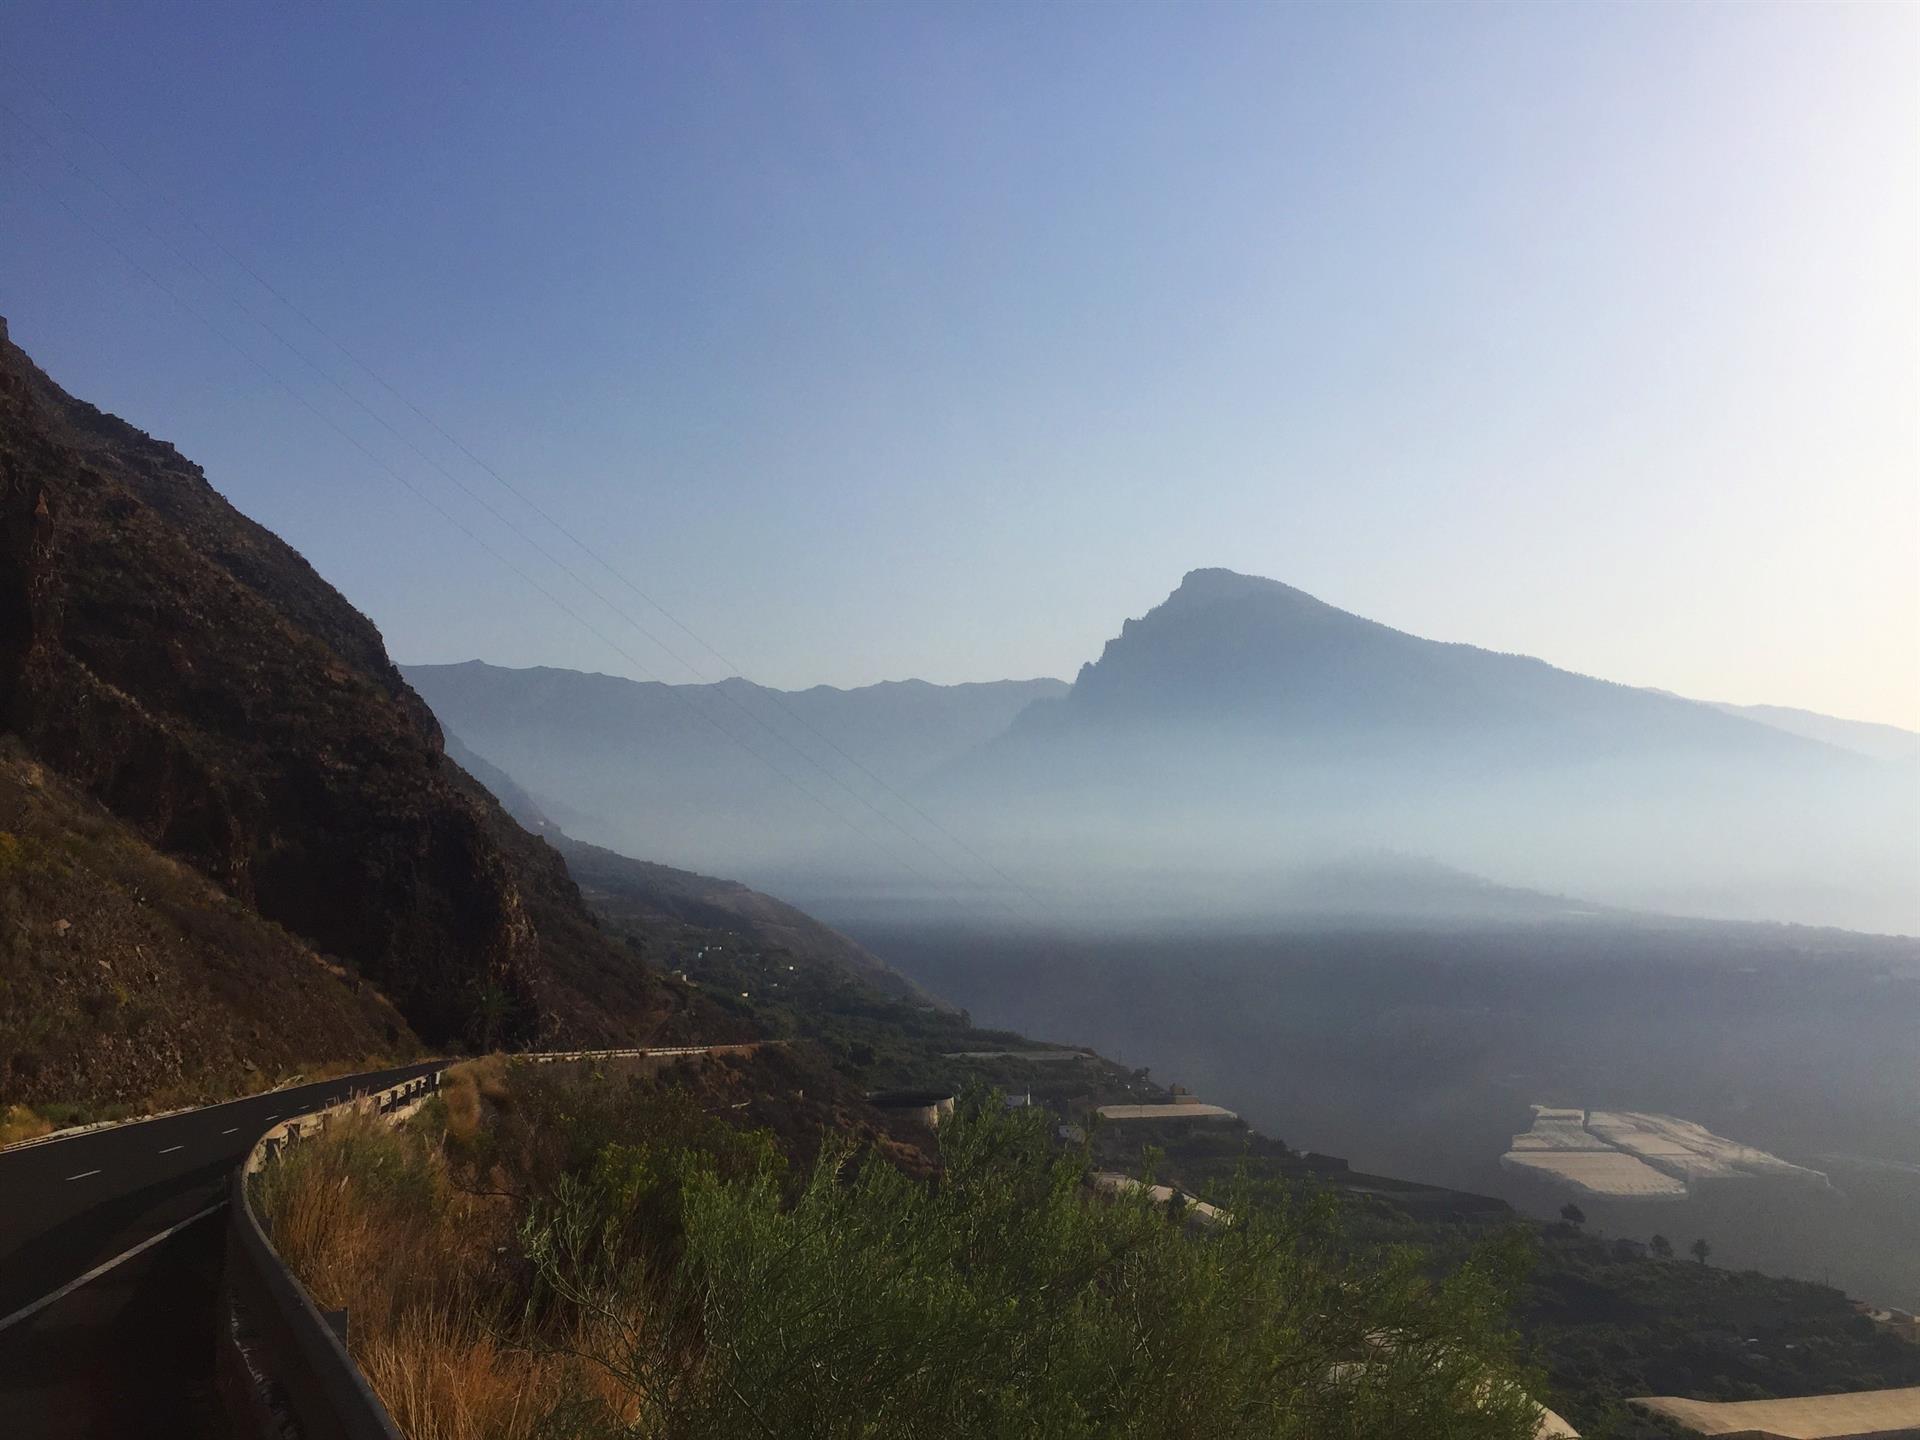 La erupción del volcán de Cumbre Vieja, en La Palma, está provocando densas capas de gases y humo sobre el Valle de Aridane. EFE/ Miguel Calero